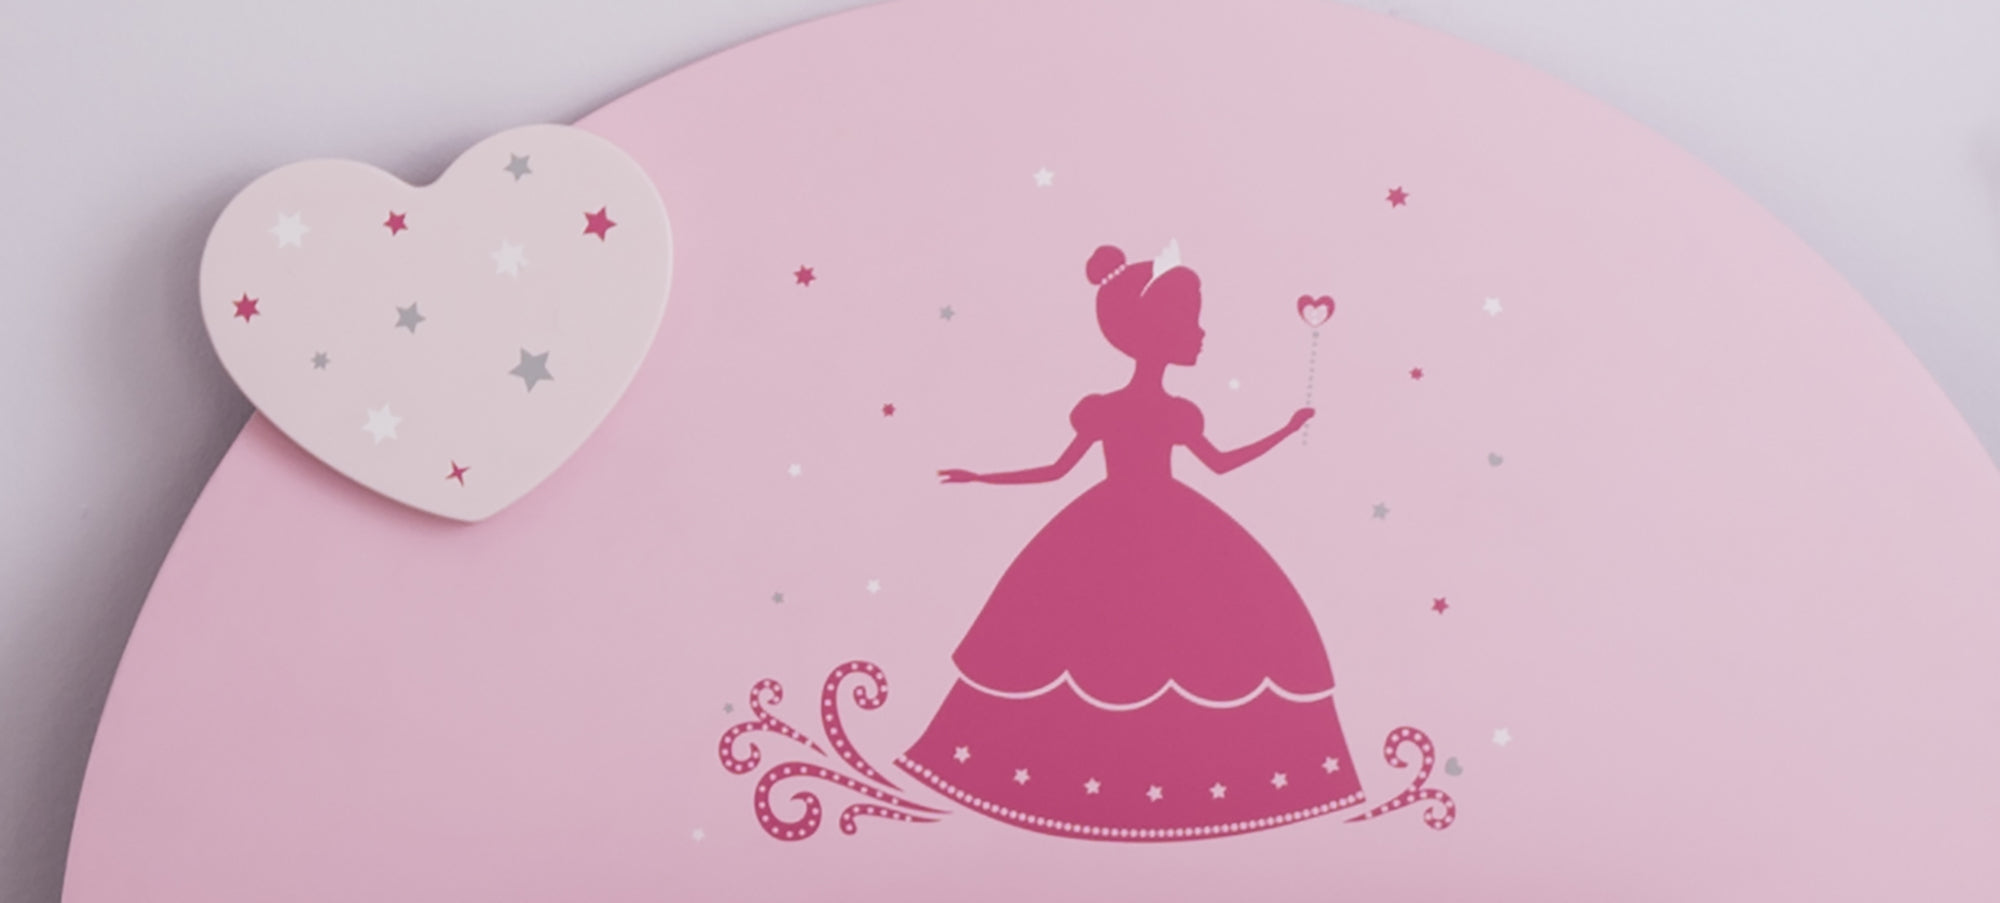 90*190 cm Kinderbett Lotte mit schönem geschwungenen Kopf- und Fußteil weiß - rosa